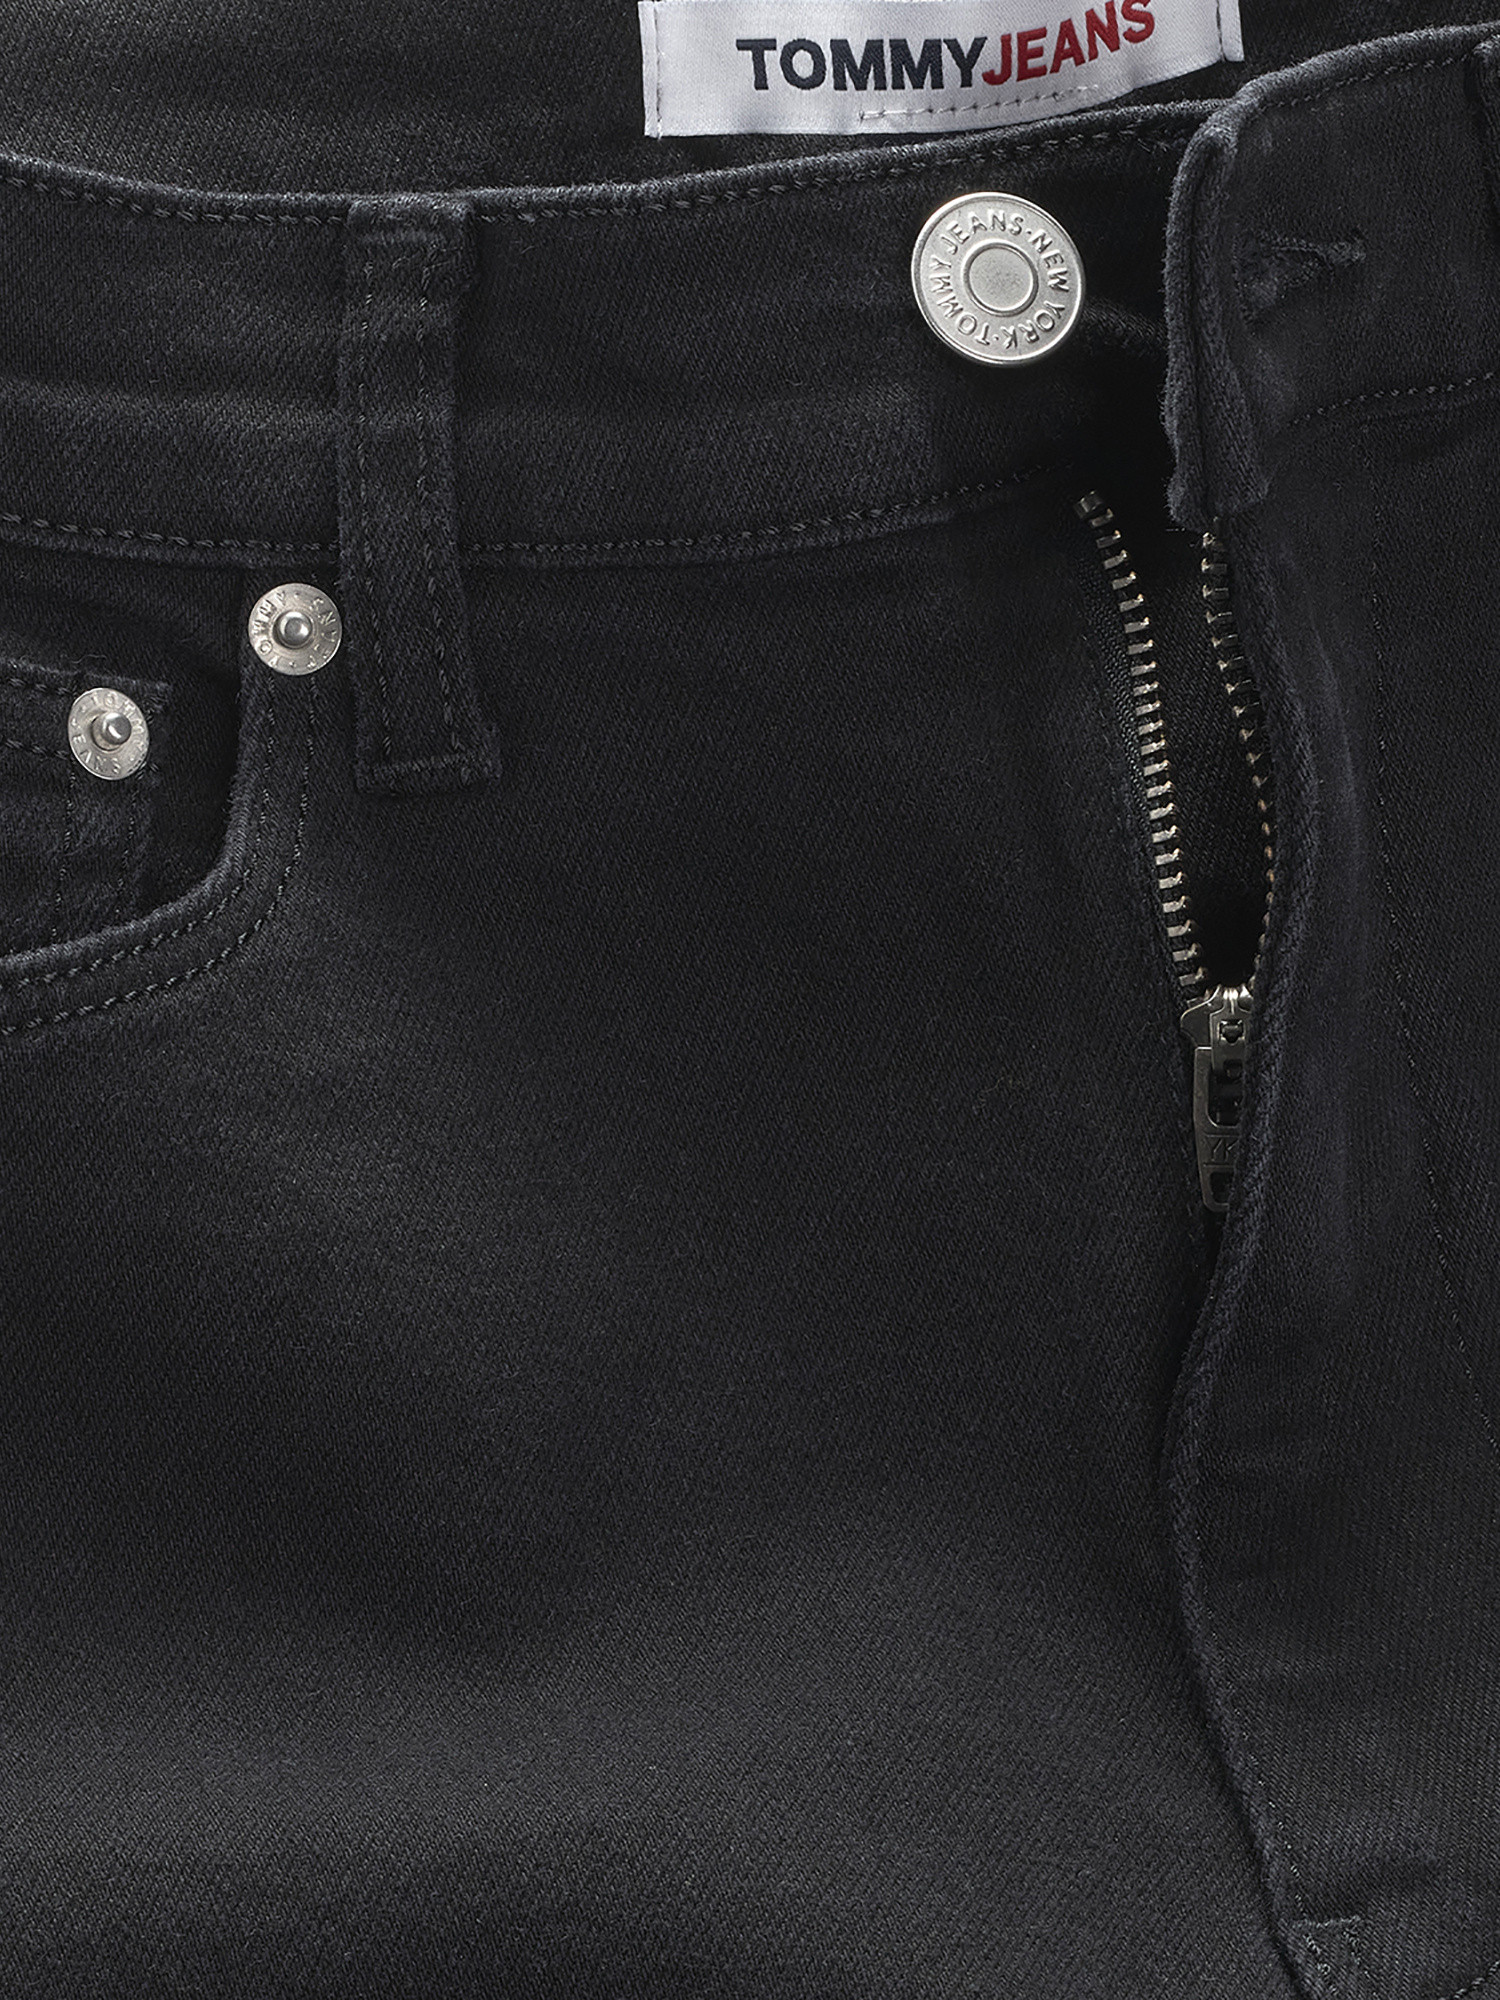 Tommy Jeans - Super skinny jeans, Black, large image number 2